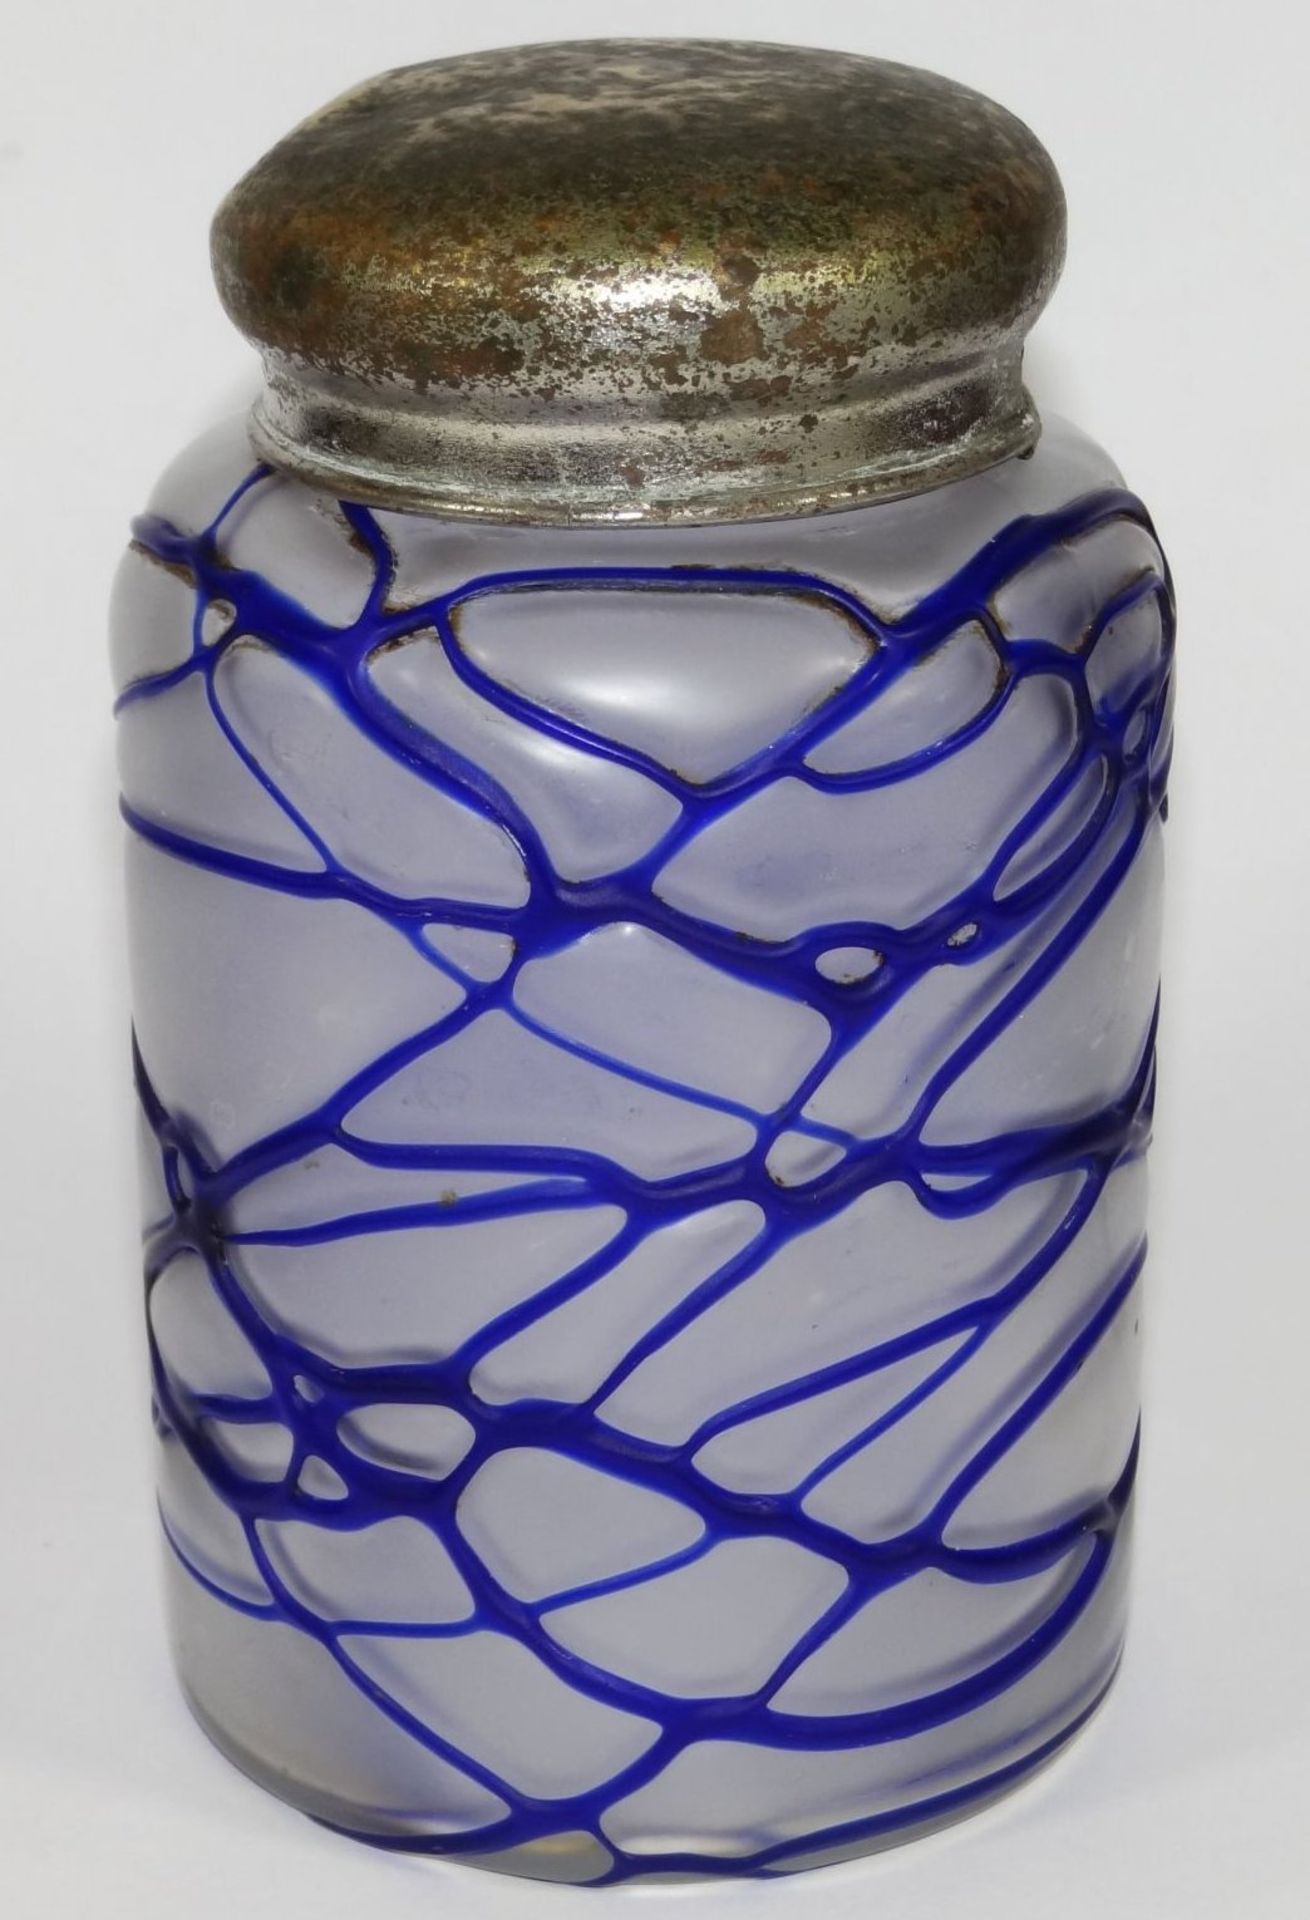 Milchglasdose mit aufgelegten blauen Fäden, Metallmontur kyrillisch beschriftet, H-15 cm, D-8,5